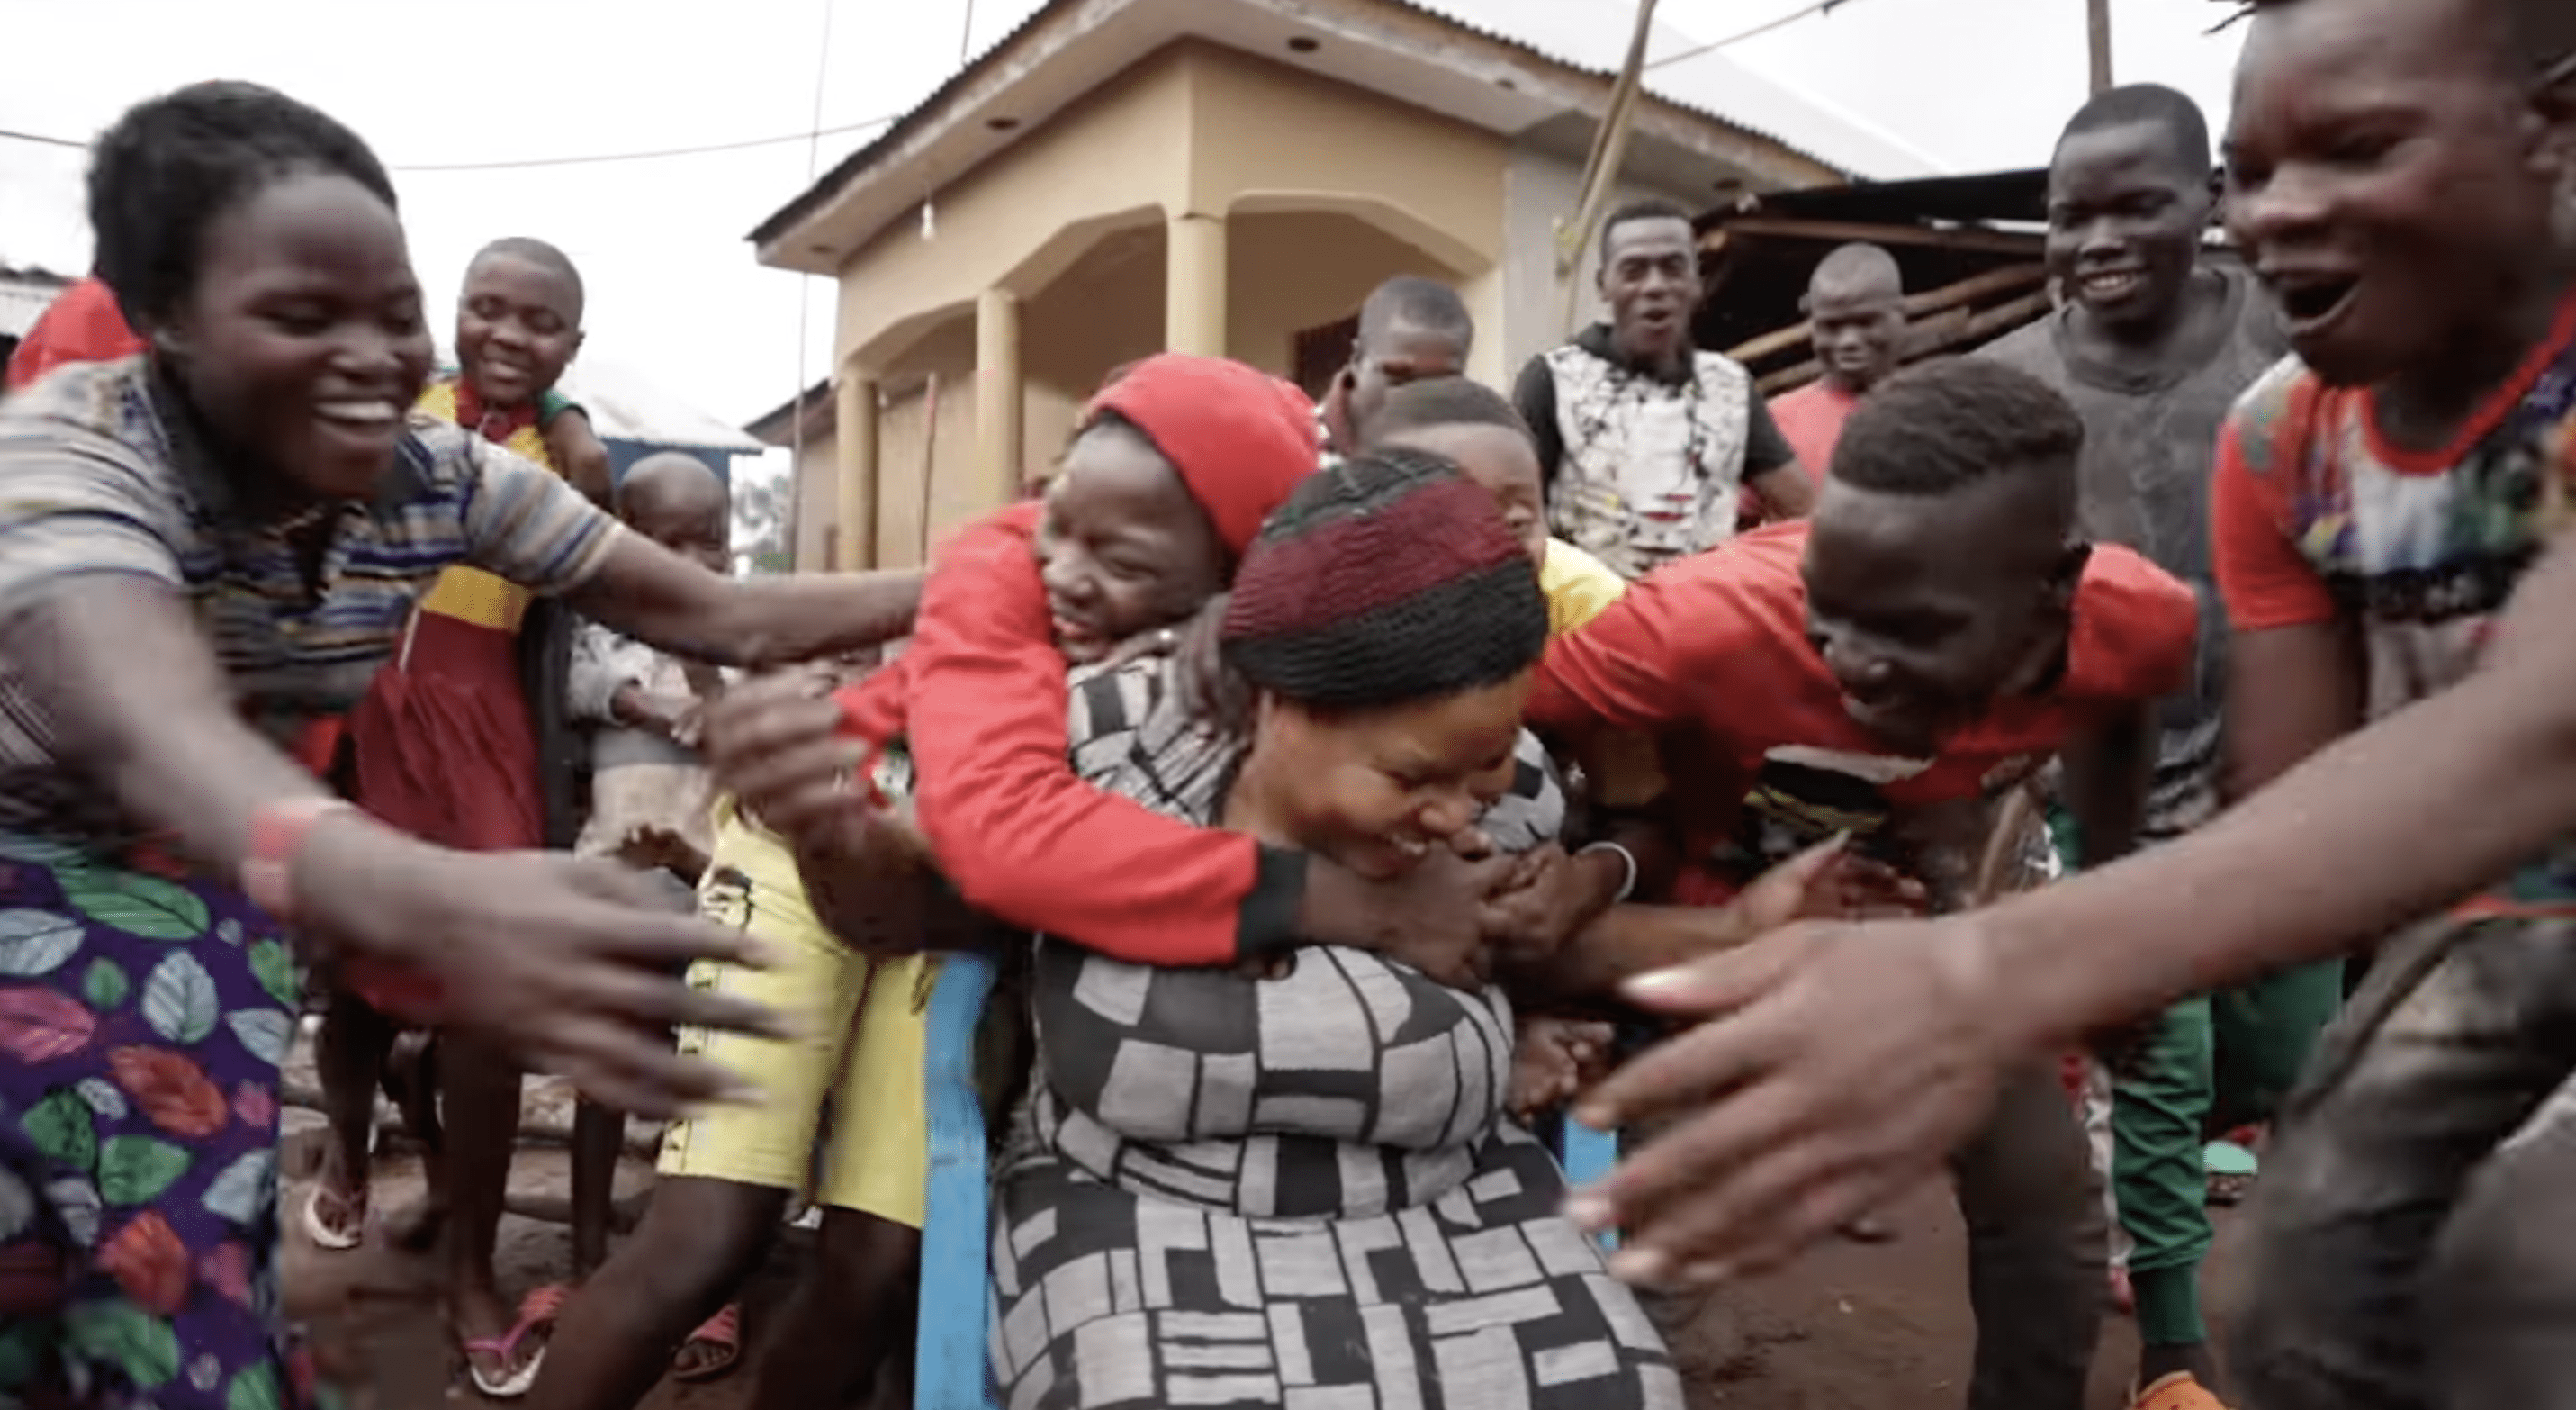 Nabatanzis riesige Brut hüllt sie in eine liebevolle Umarmung. | Quelle: YouTube.com/Connect With Uganda